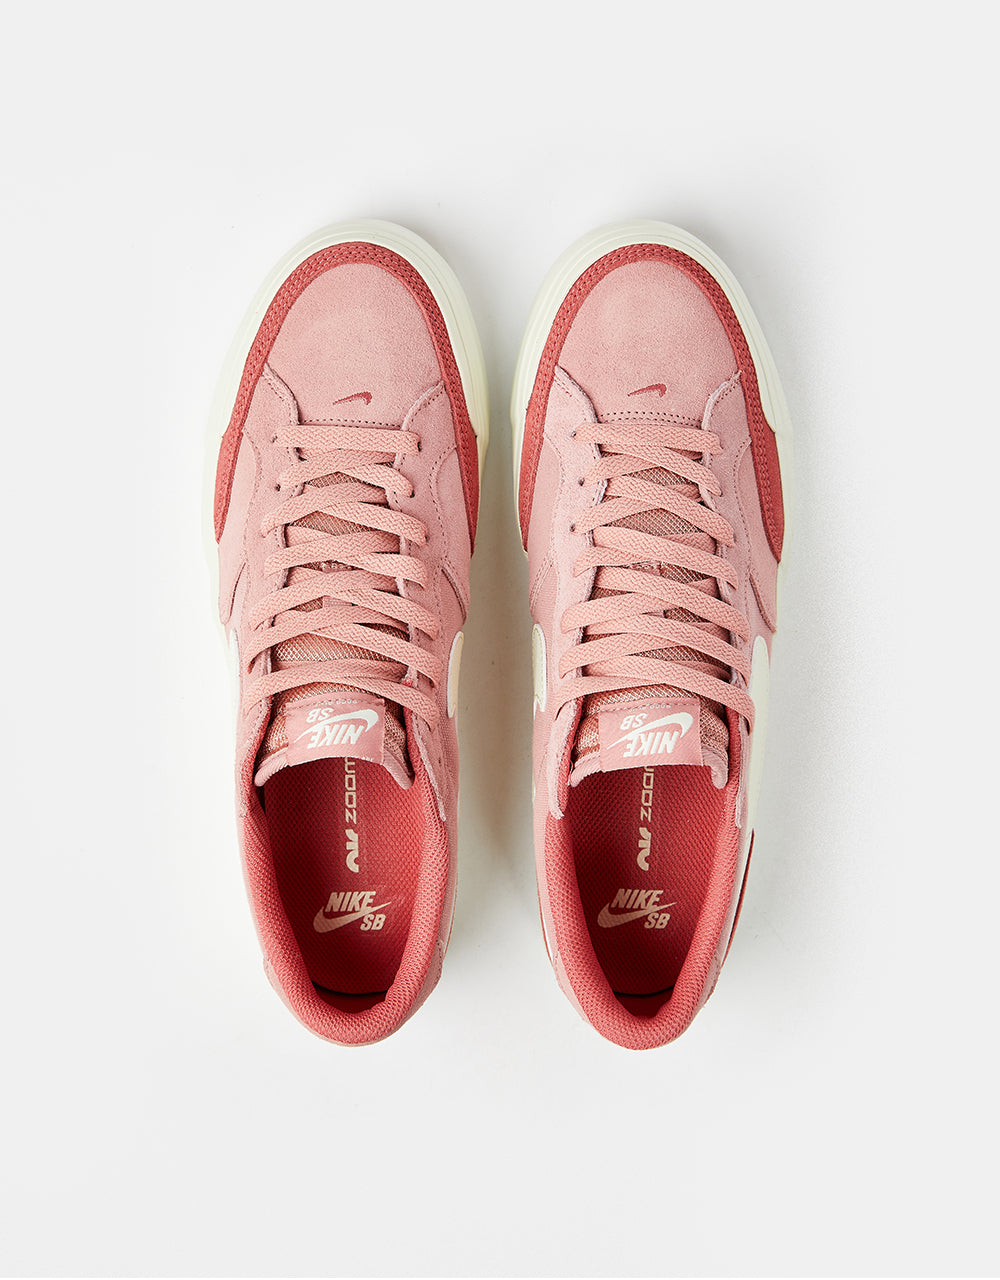 Nike SB Zoom Pogo Plus Skate Shoes - Red Stardust/Coconut Milk-Adobe-Coconut Milk